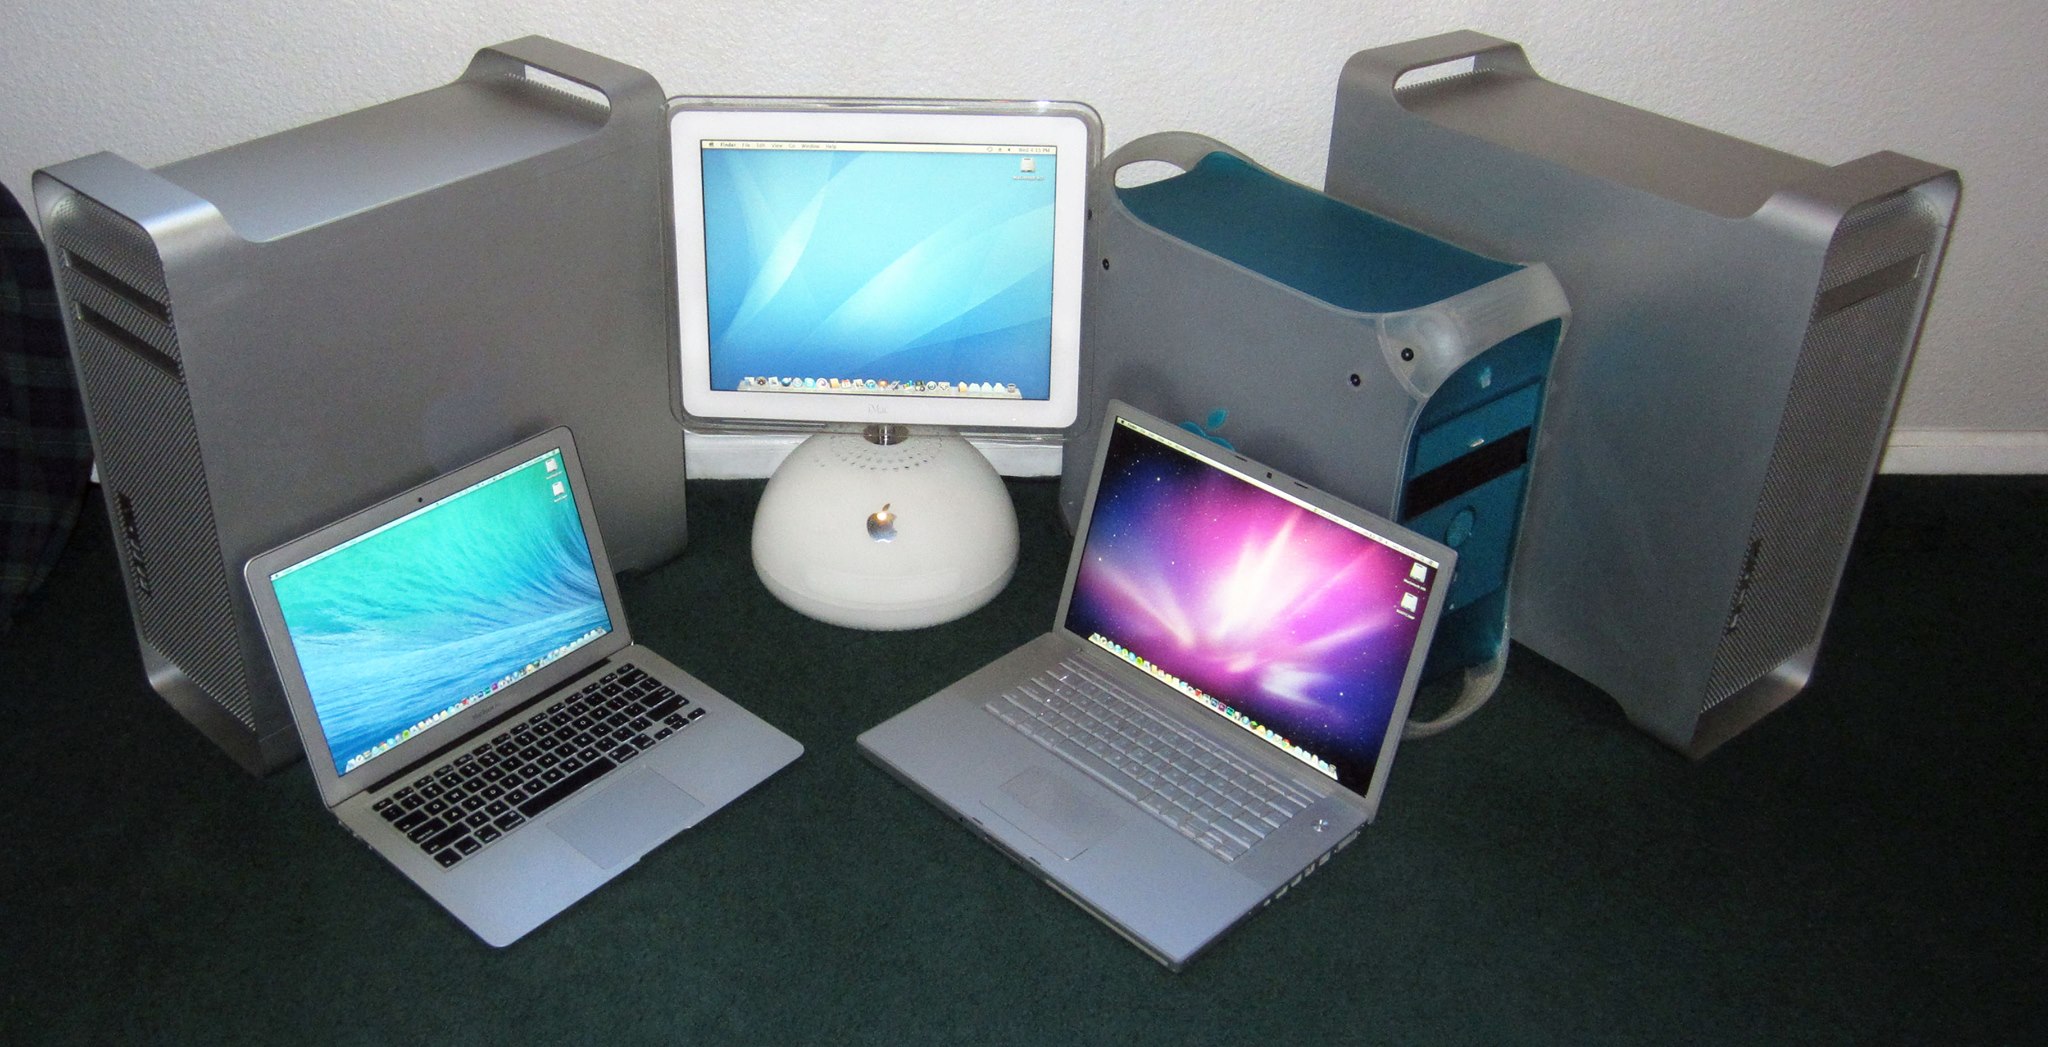 identify mac powerbook g4 1.25ghz